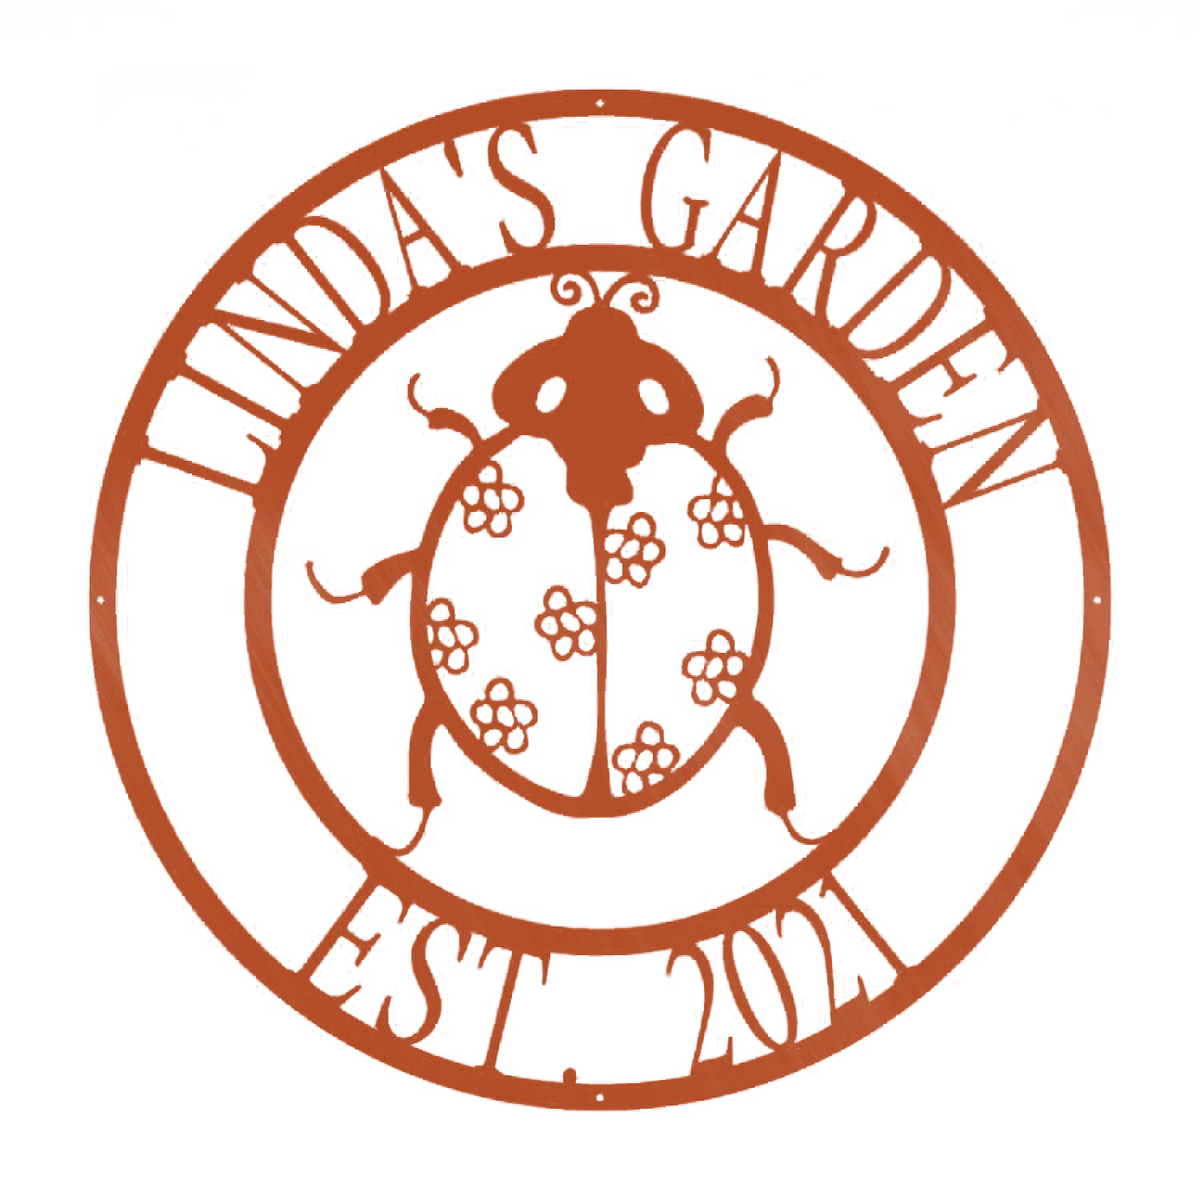 Ladybug Farm Garden Art Monogram